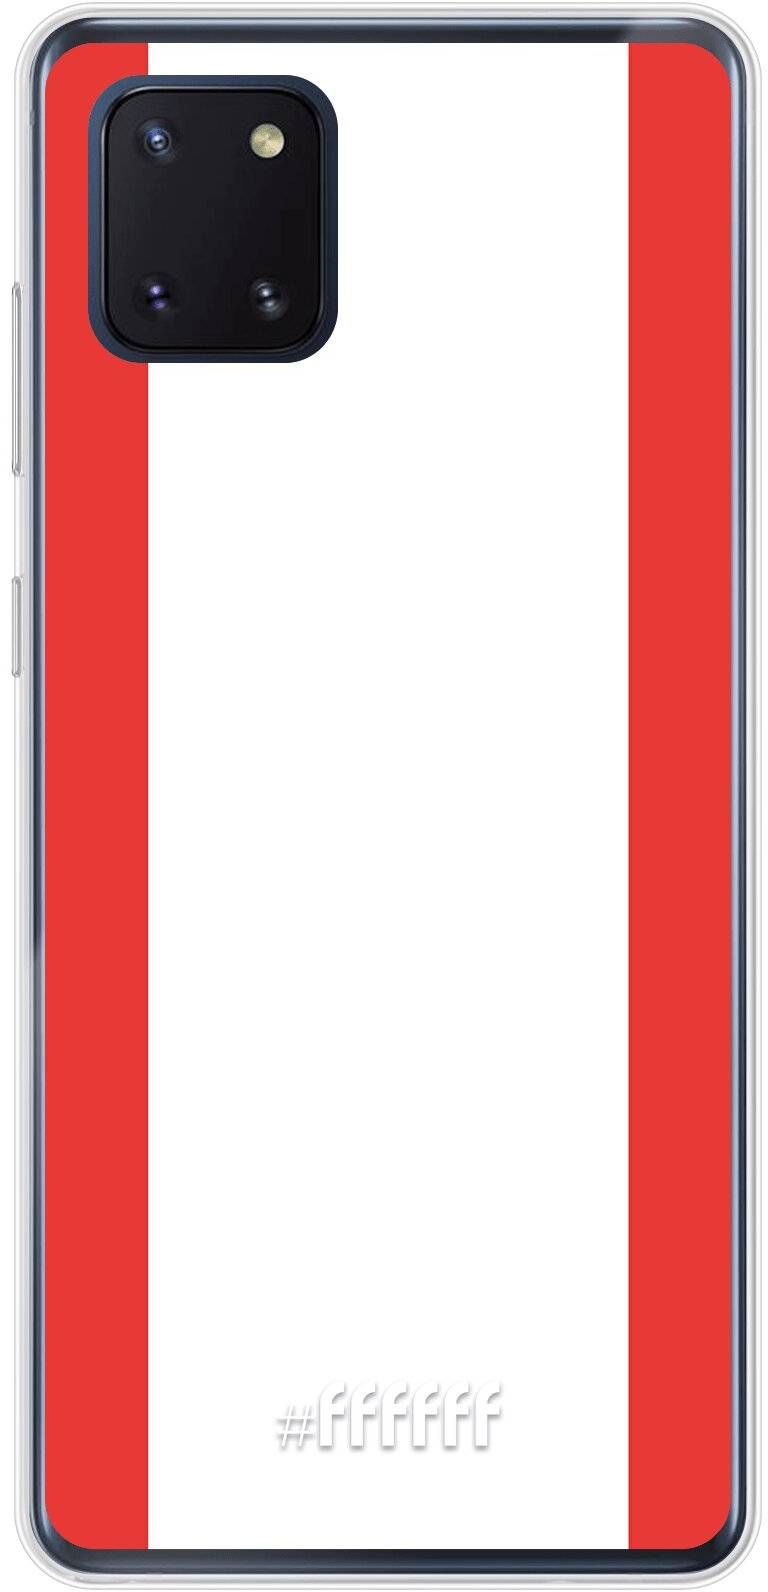 FC Emmen Galaxy Note 10 Lite